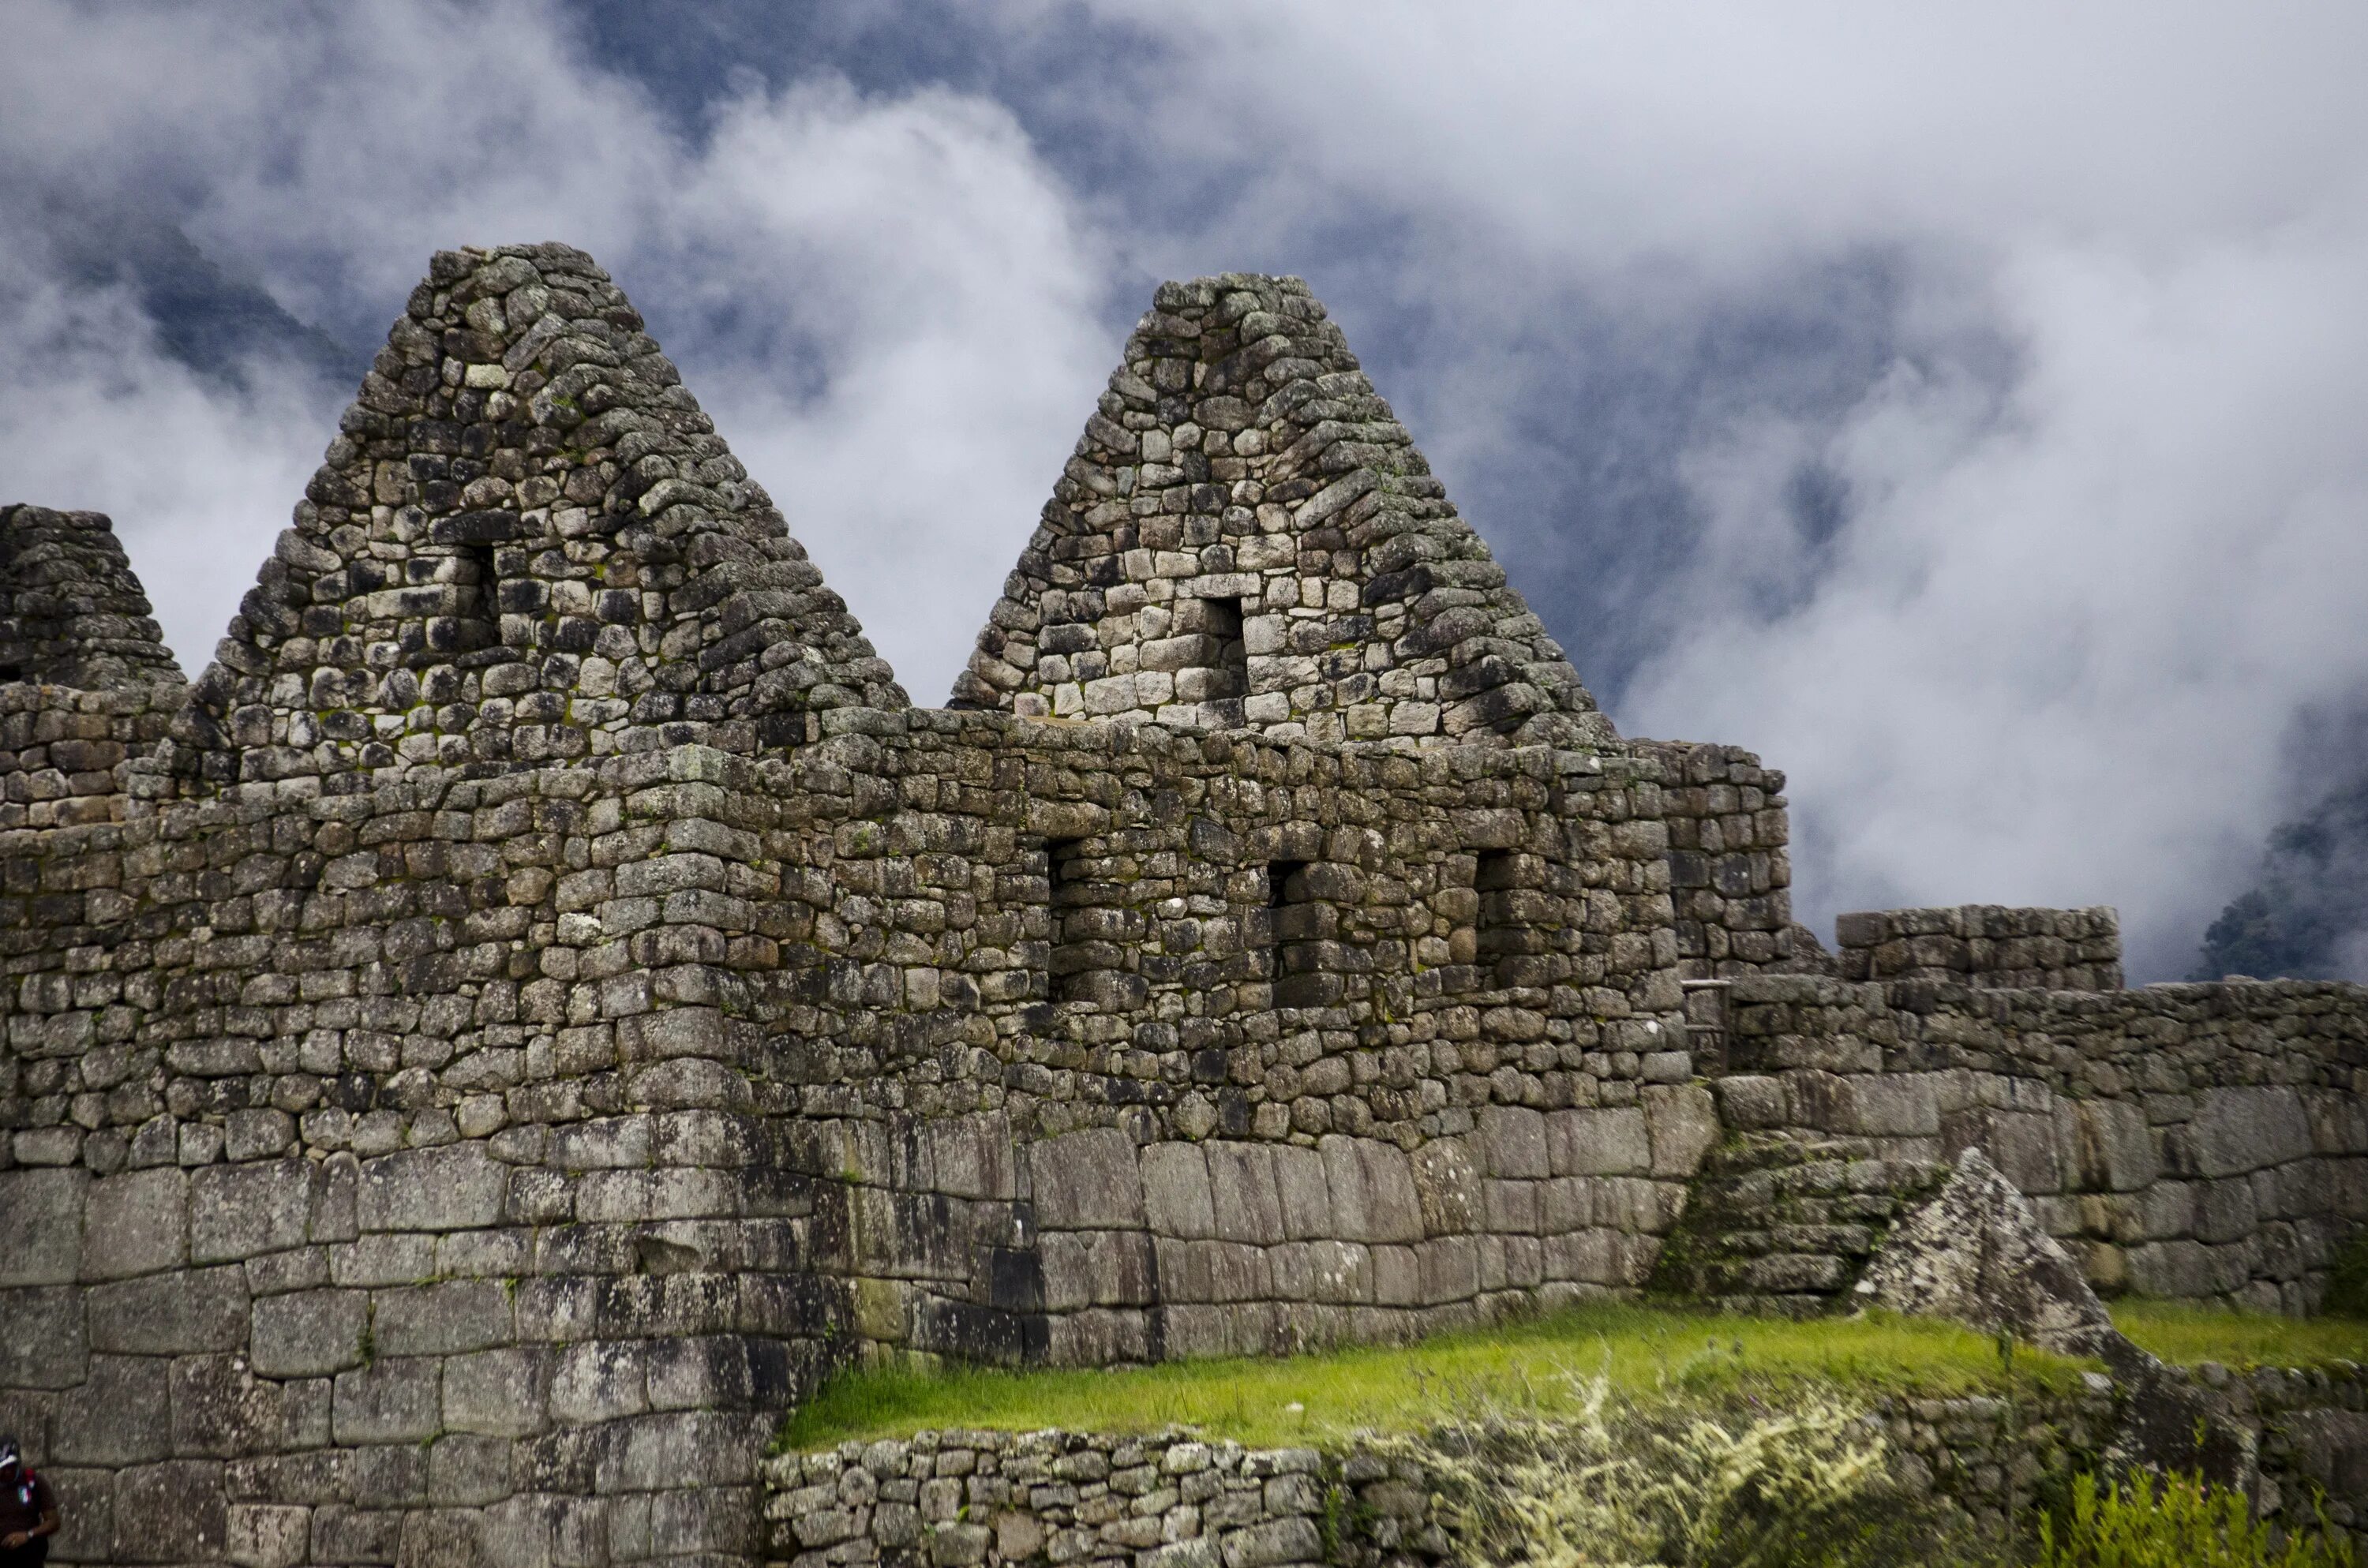 Архитектура инков Мачу Пикчу. Пирамиды в Перу Мачу Пикчу. Инки архитектура Мачу Пикчу. Пирамида Майя Мачу Пикчу.